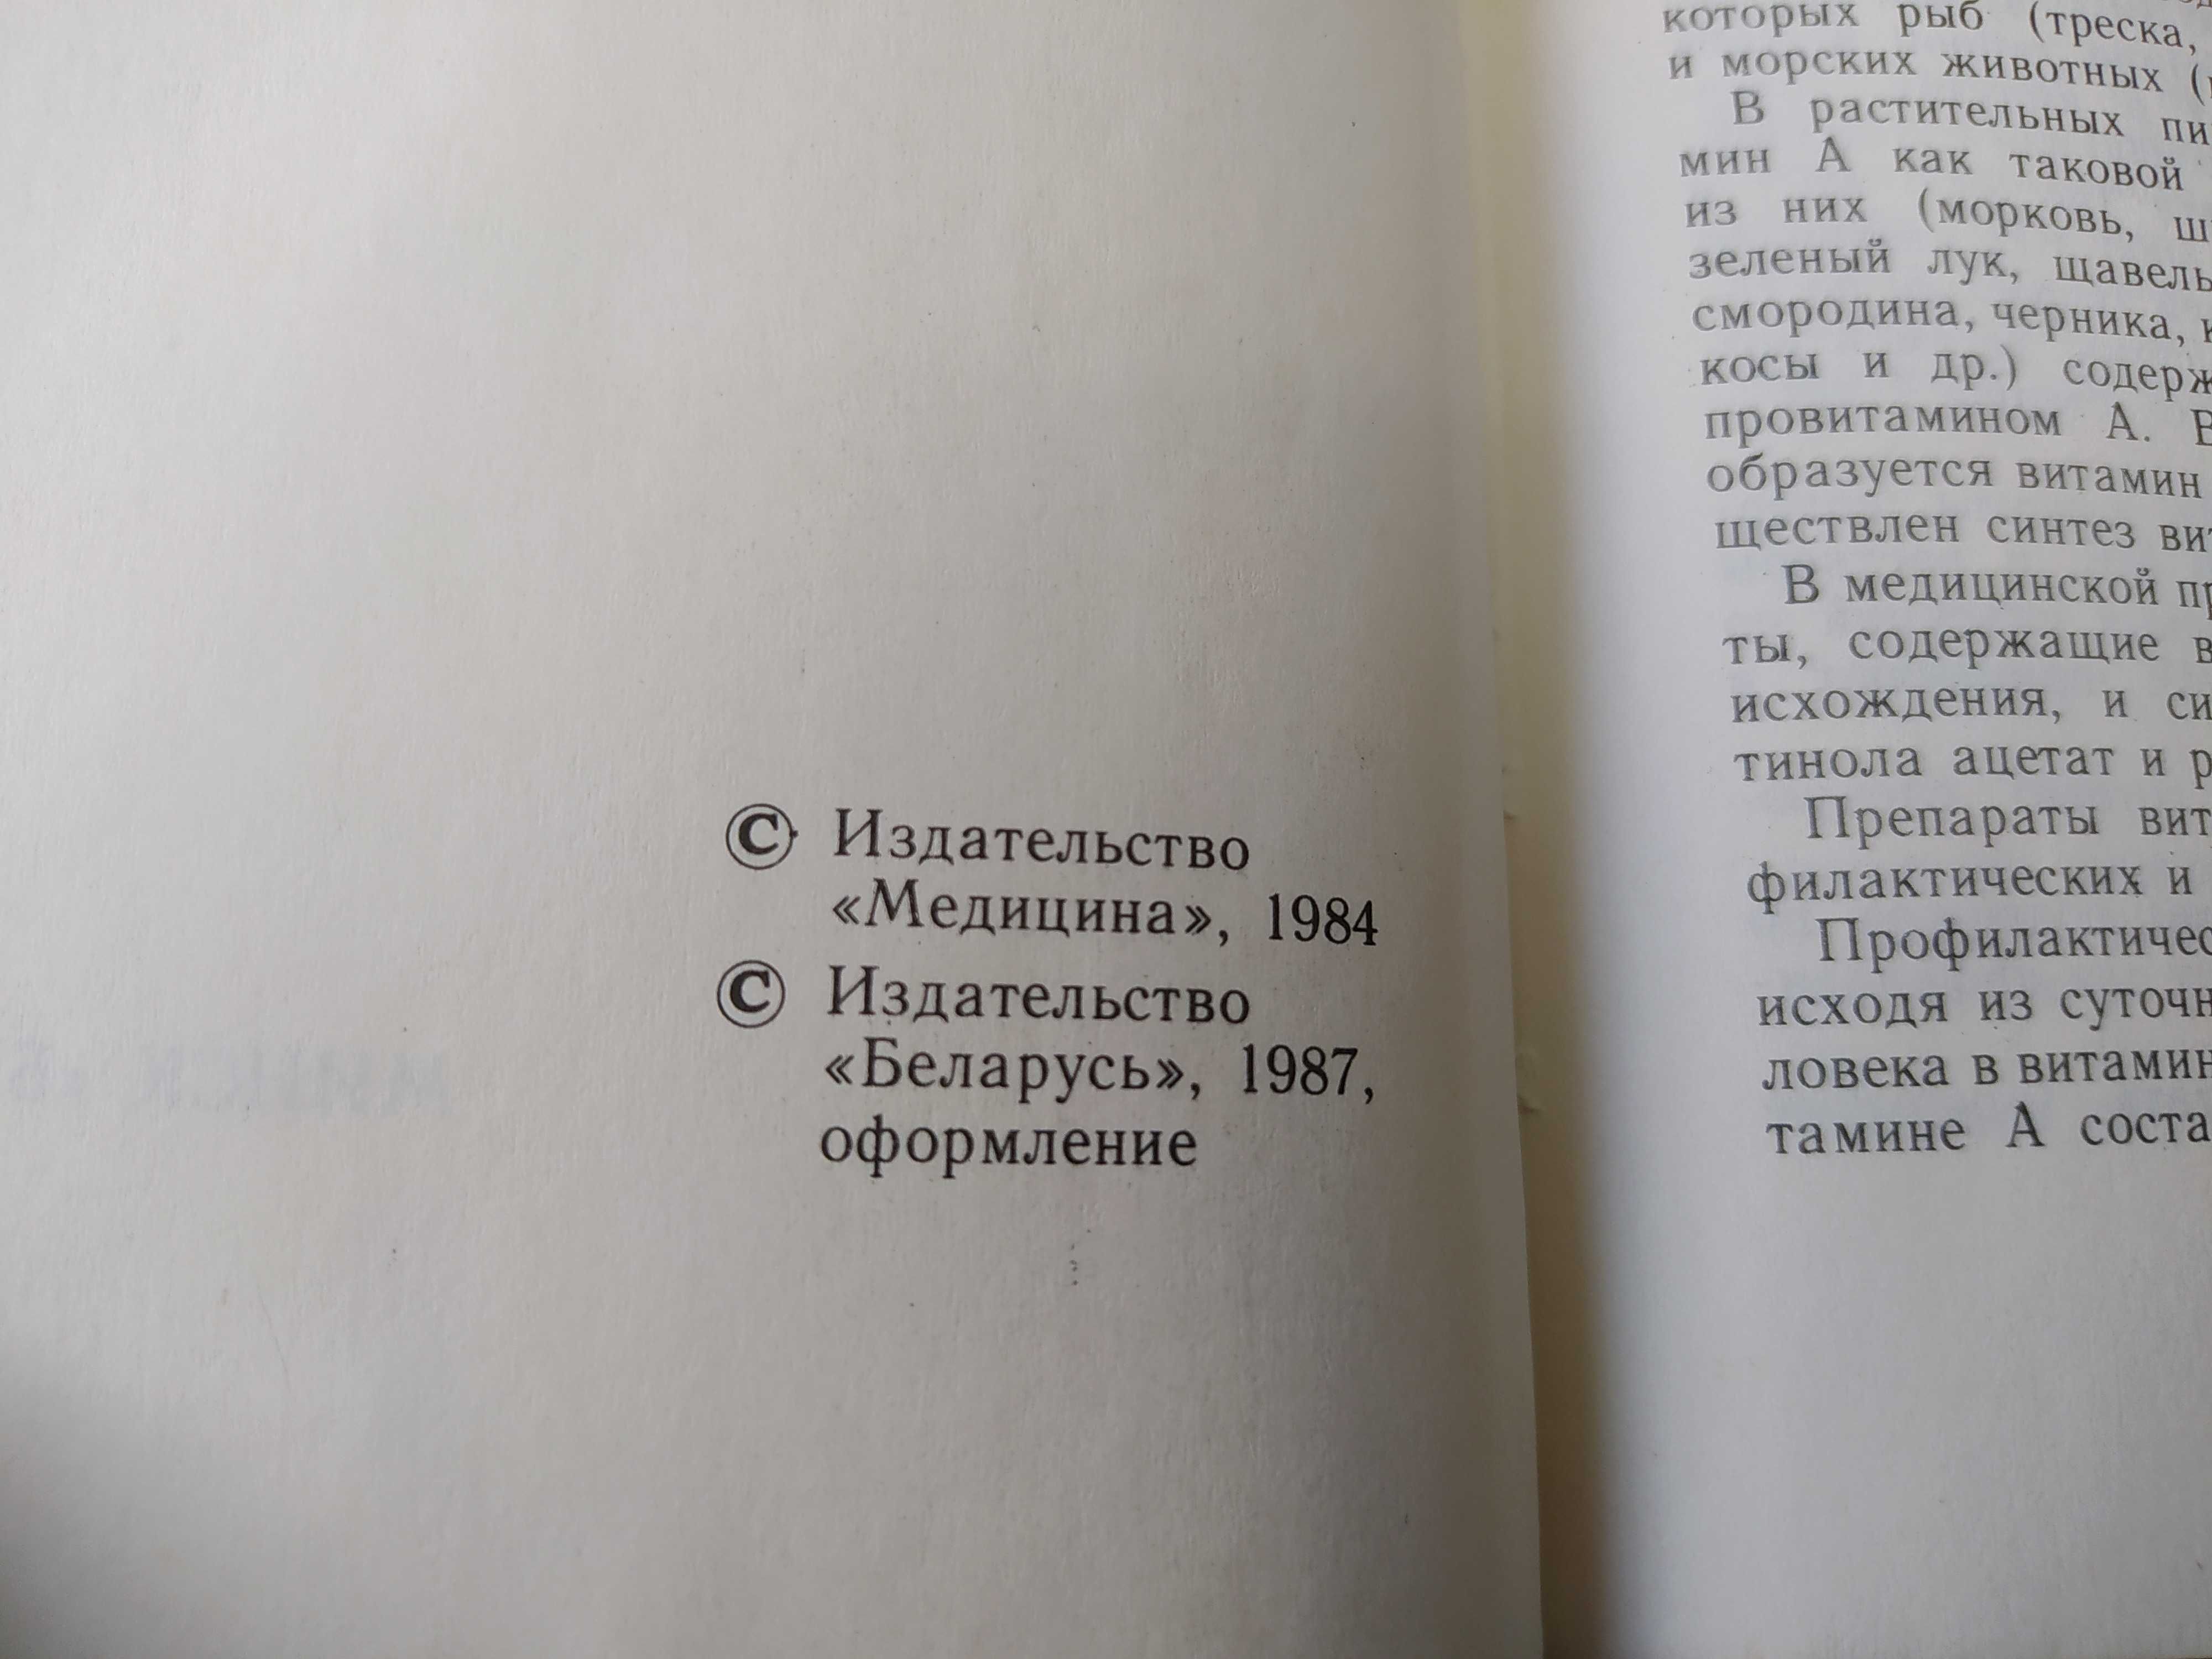 Справочници по медицина - руски език. За студенти медицина или лекари